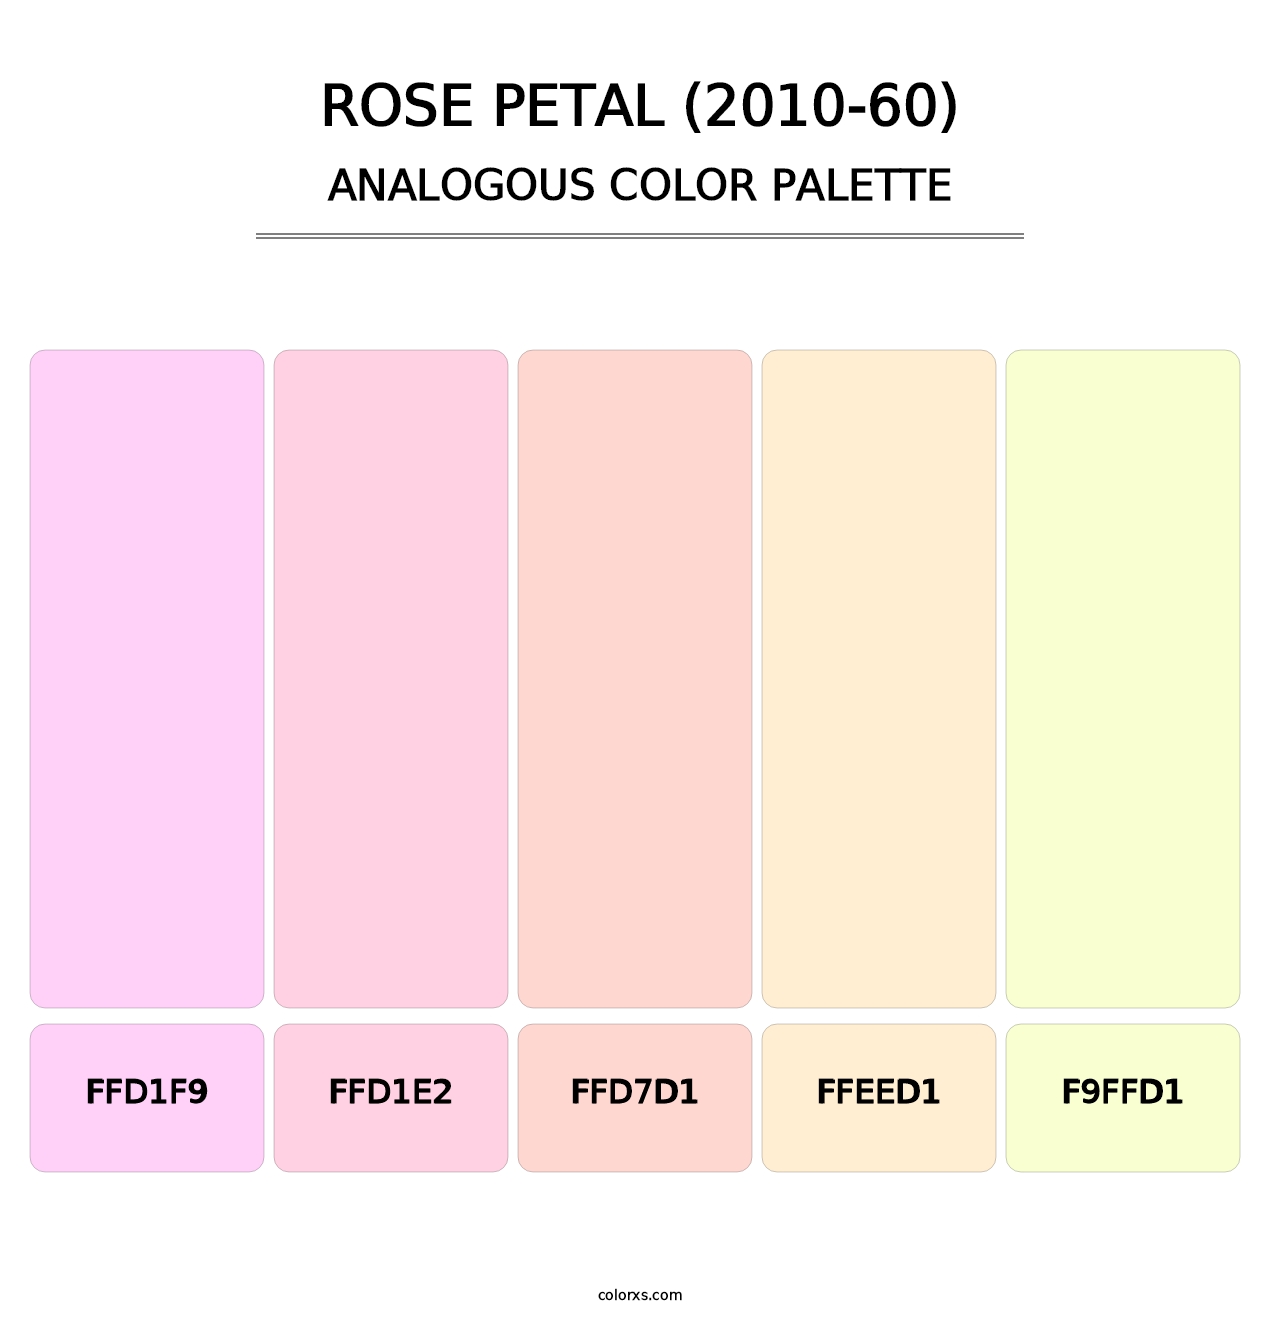 Rose Petal (2010-60) - Analogous Color Palette